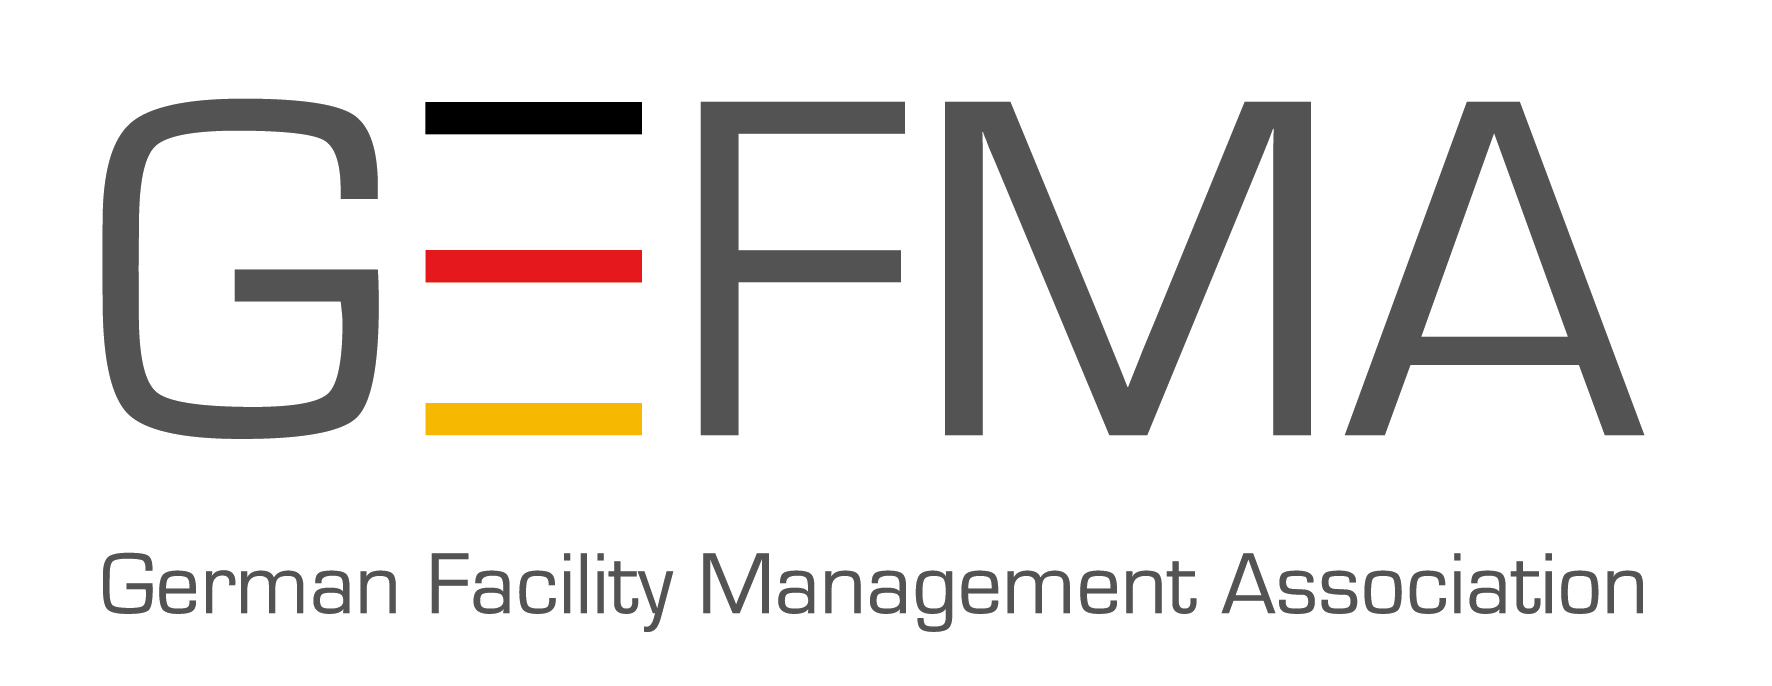 Die Pacon Real Estate GmbH ist Mitglied der GEFMA (German Facility Management Association)